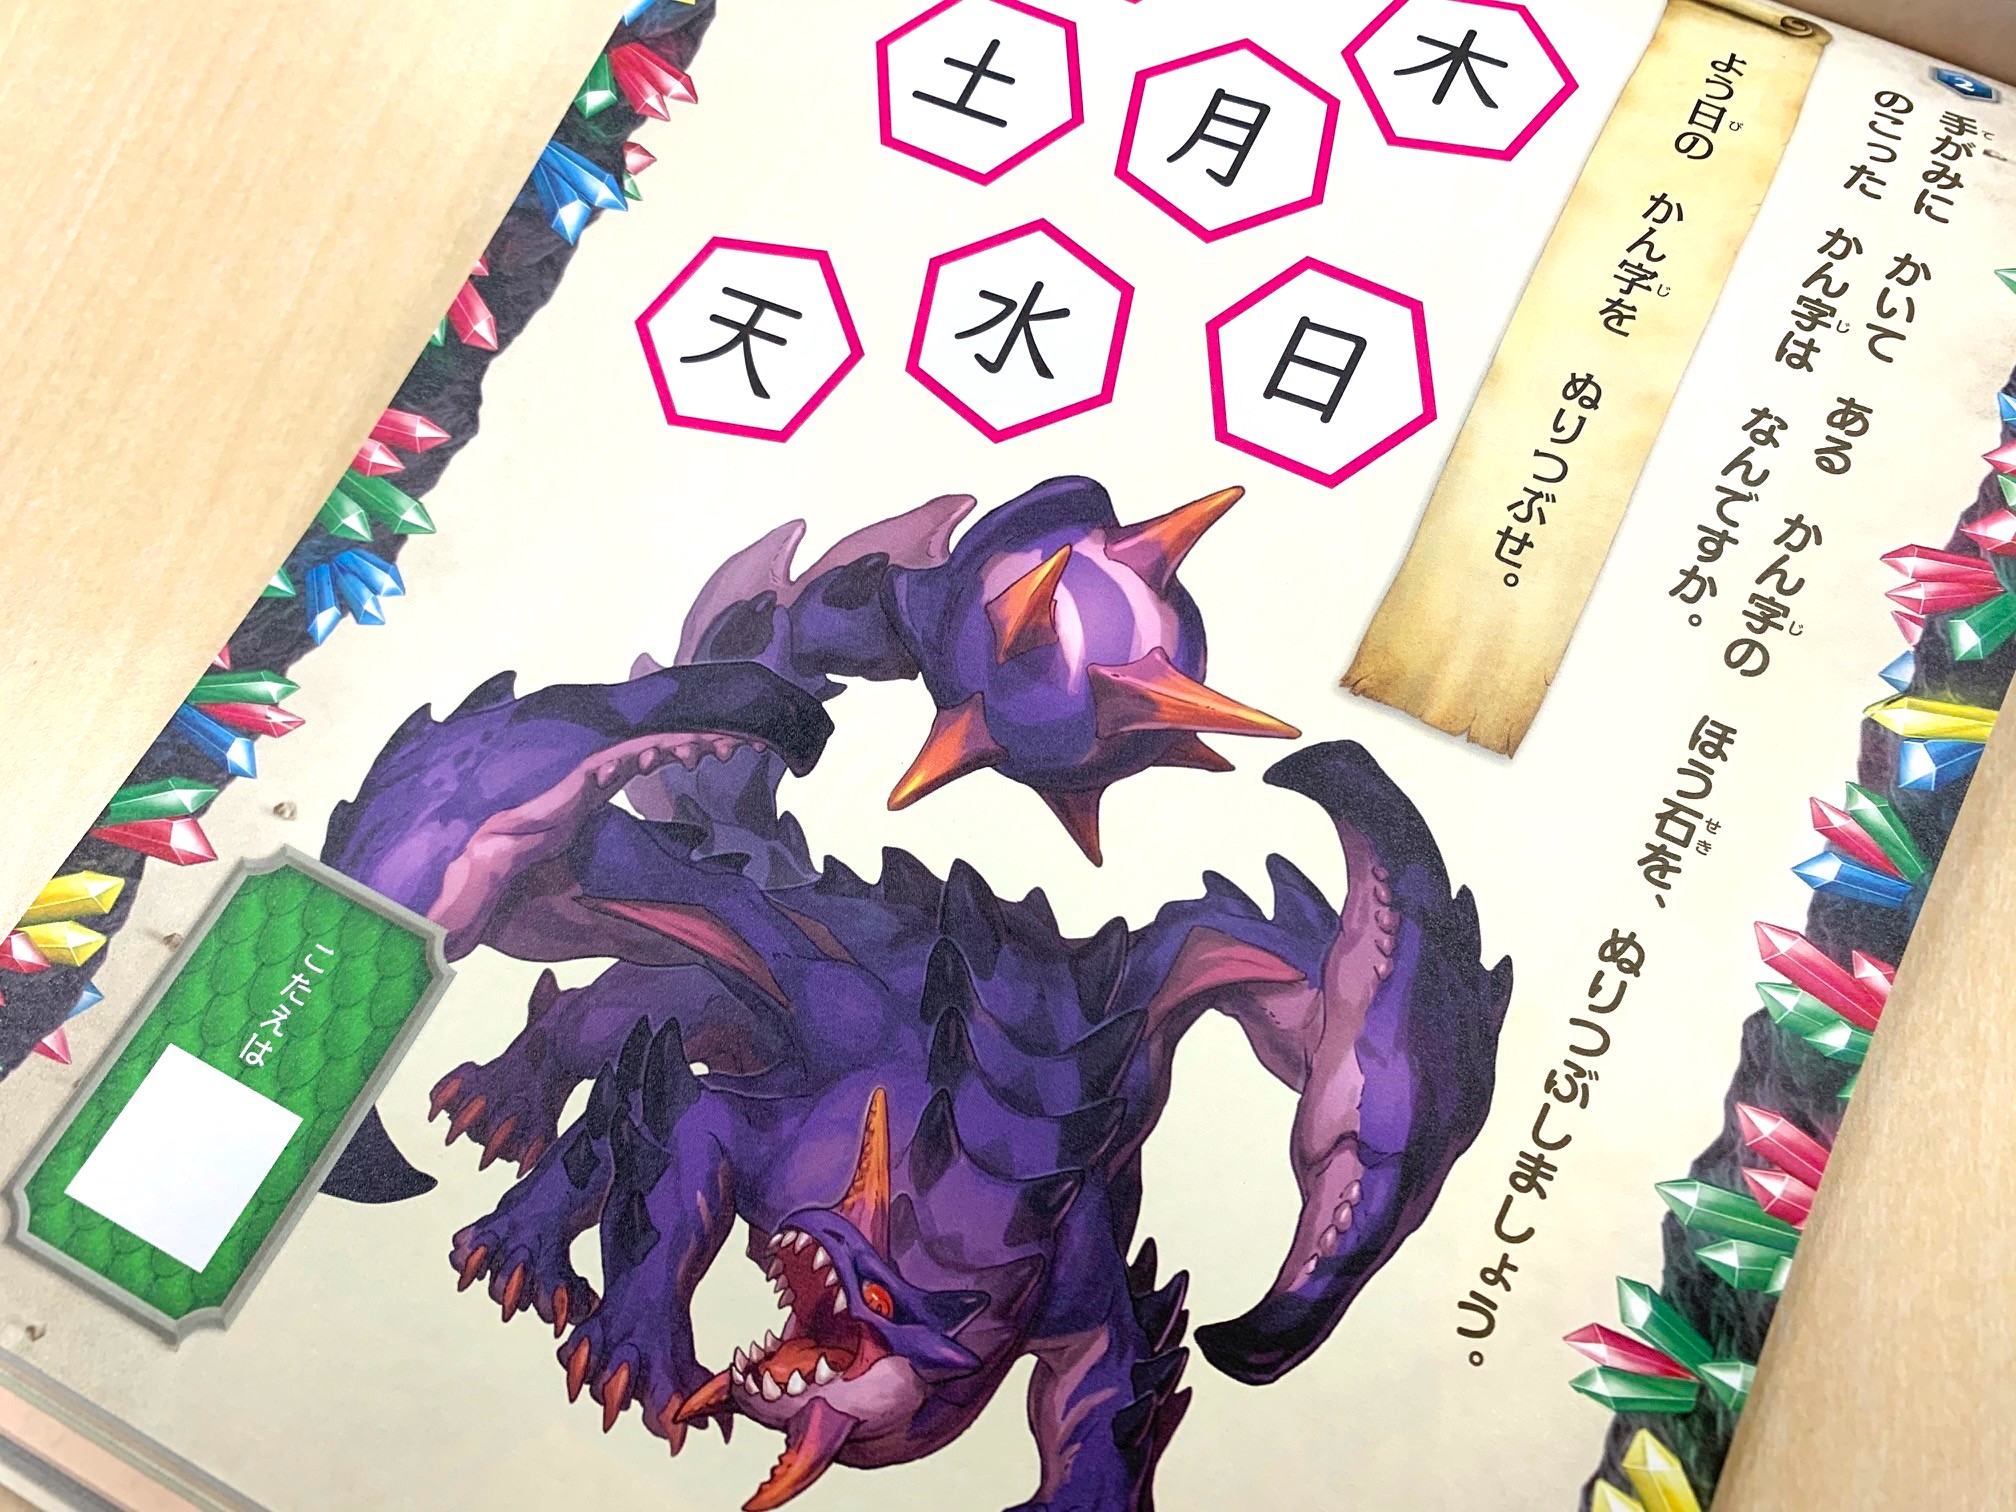 ドラゴンのイラストが大きく載ったパズルページ。